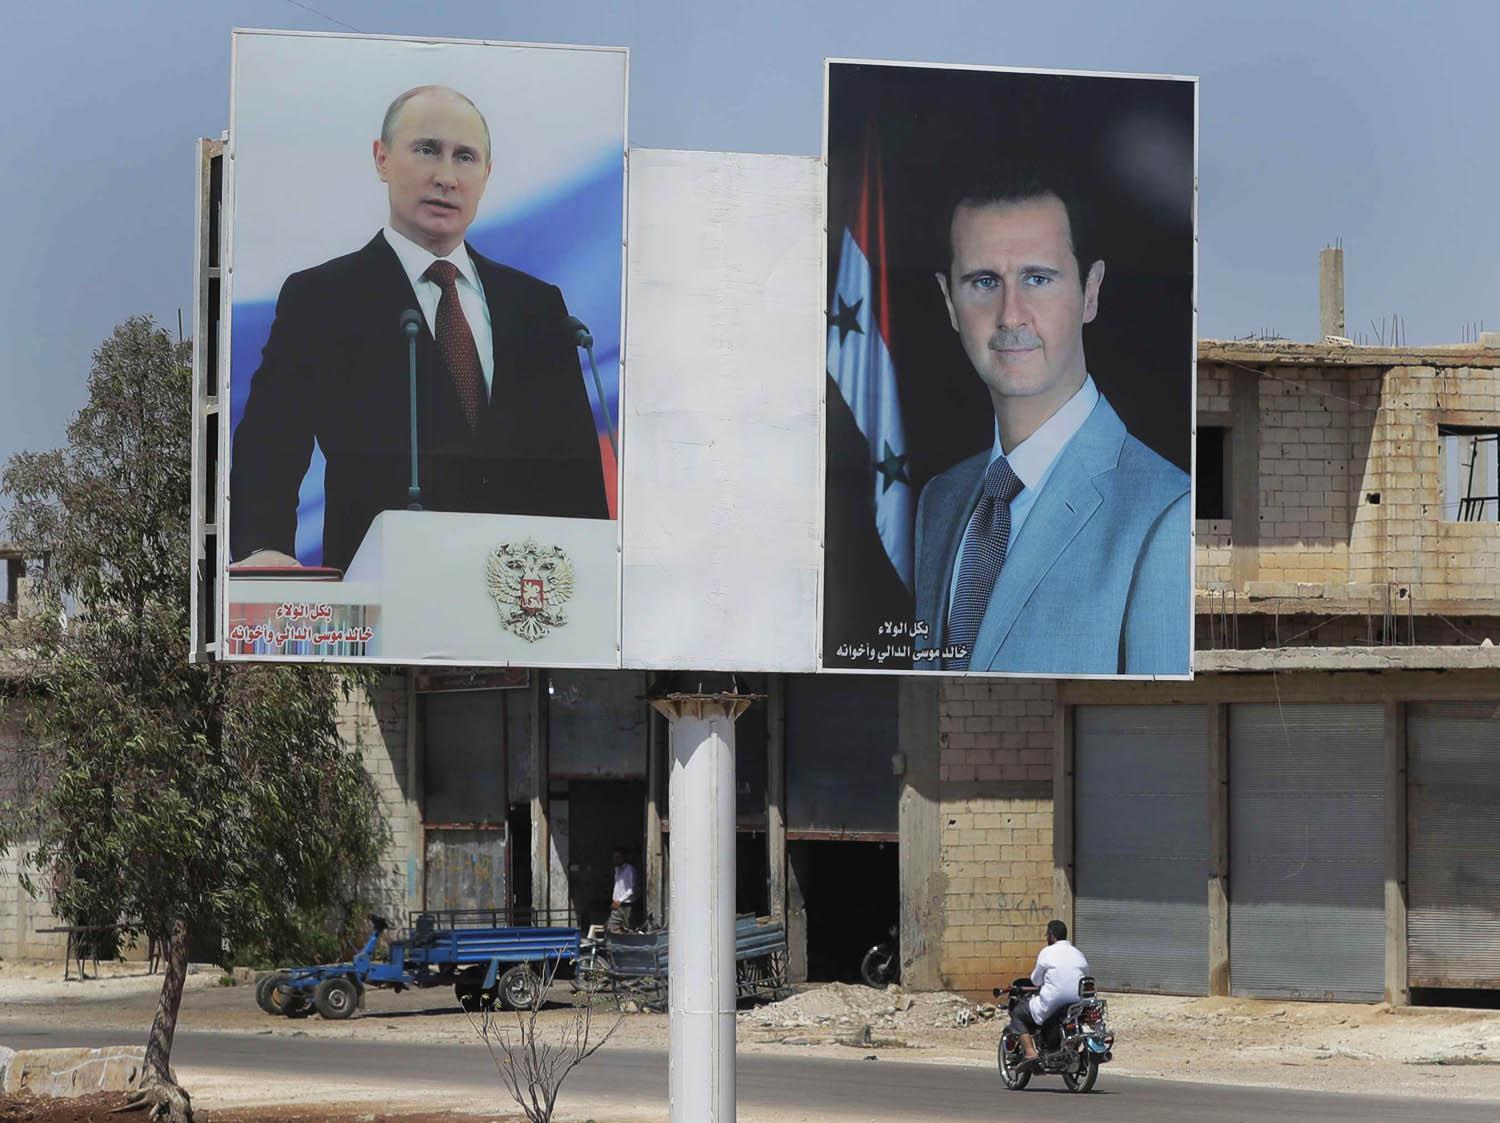 بقاء بشار الاسد على راس الدولة السورية يبدو انه مصلحة روسية في الاساس